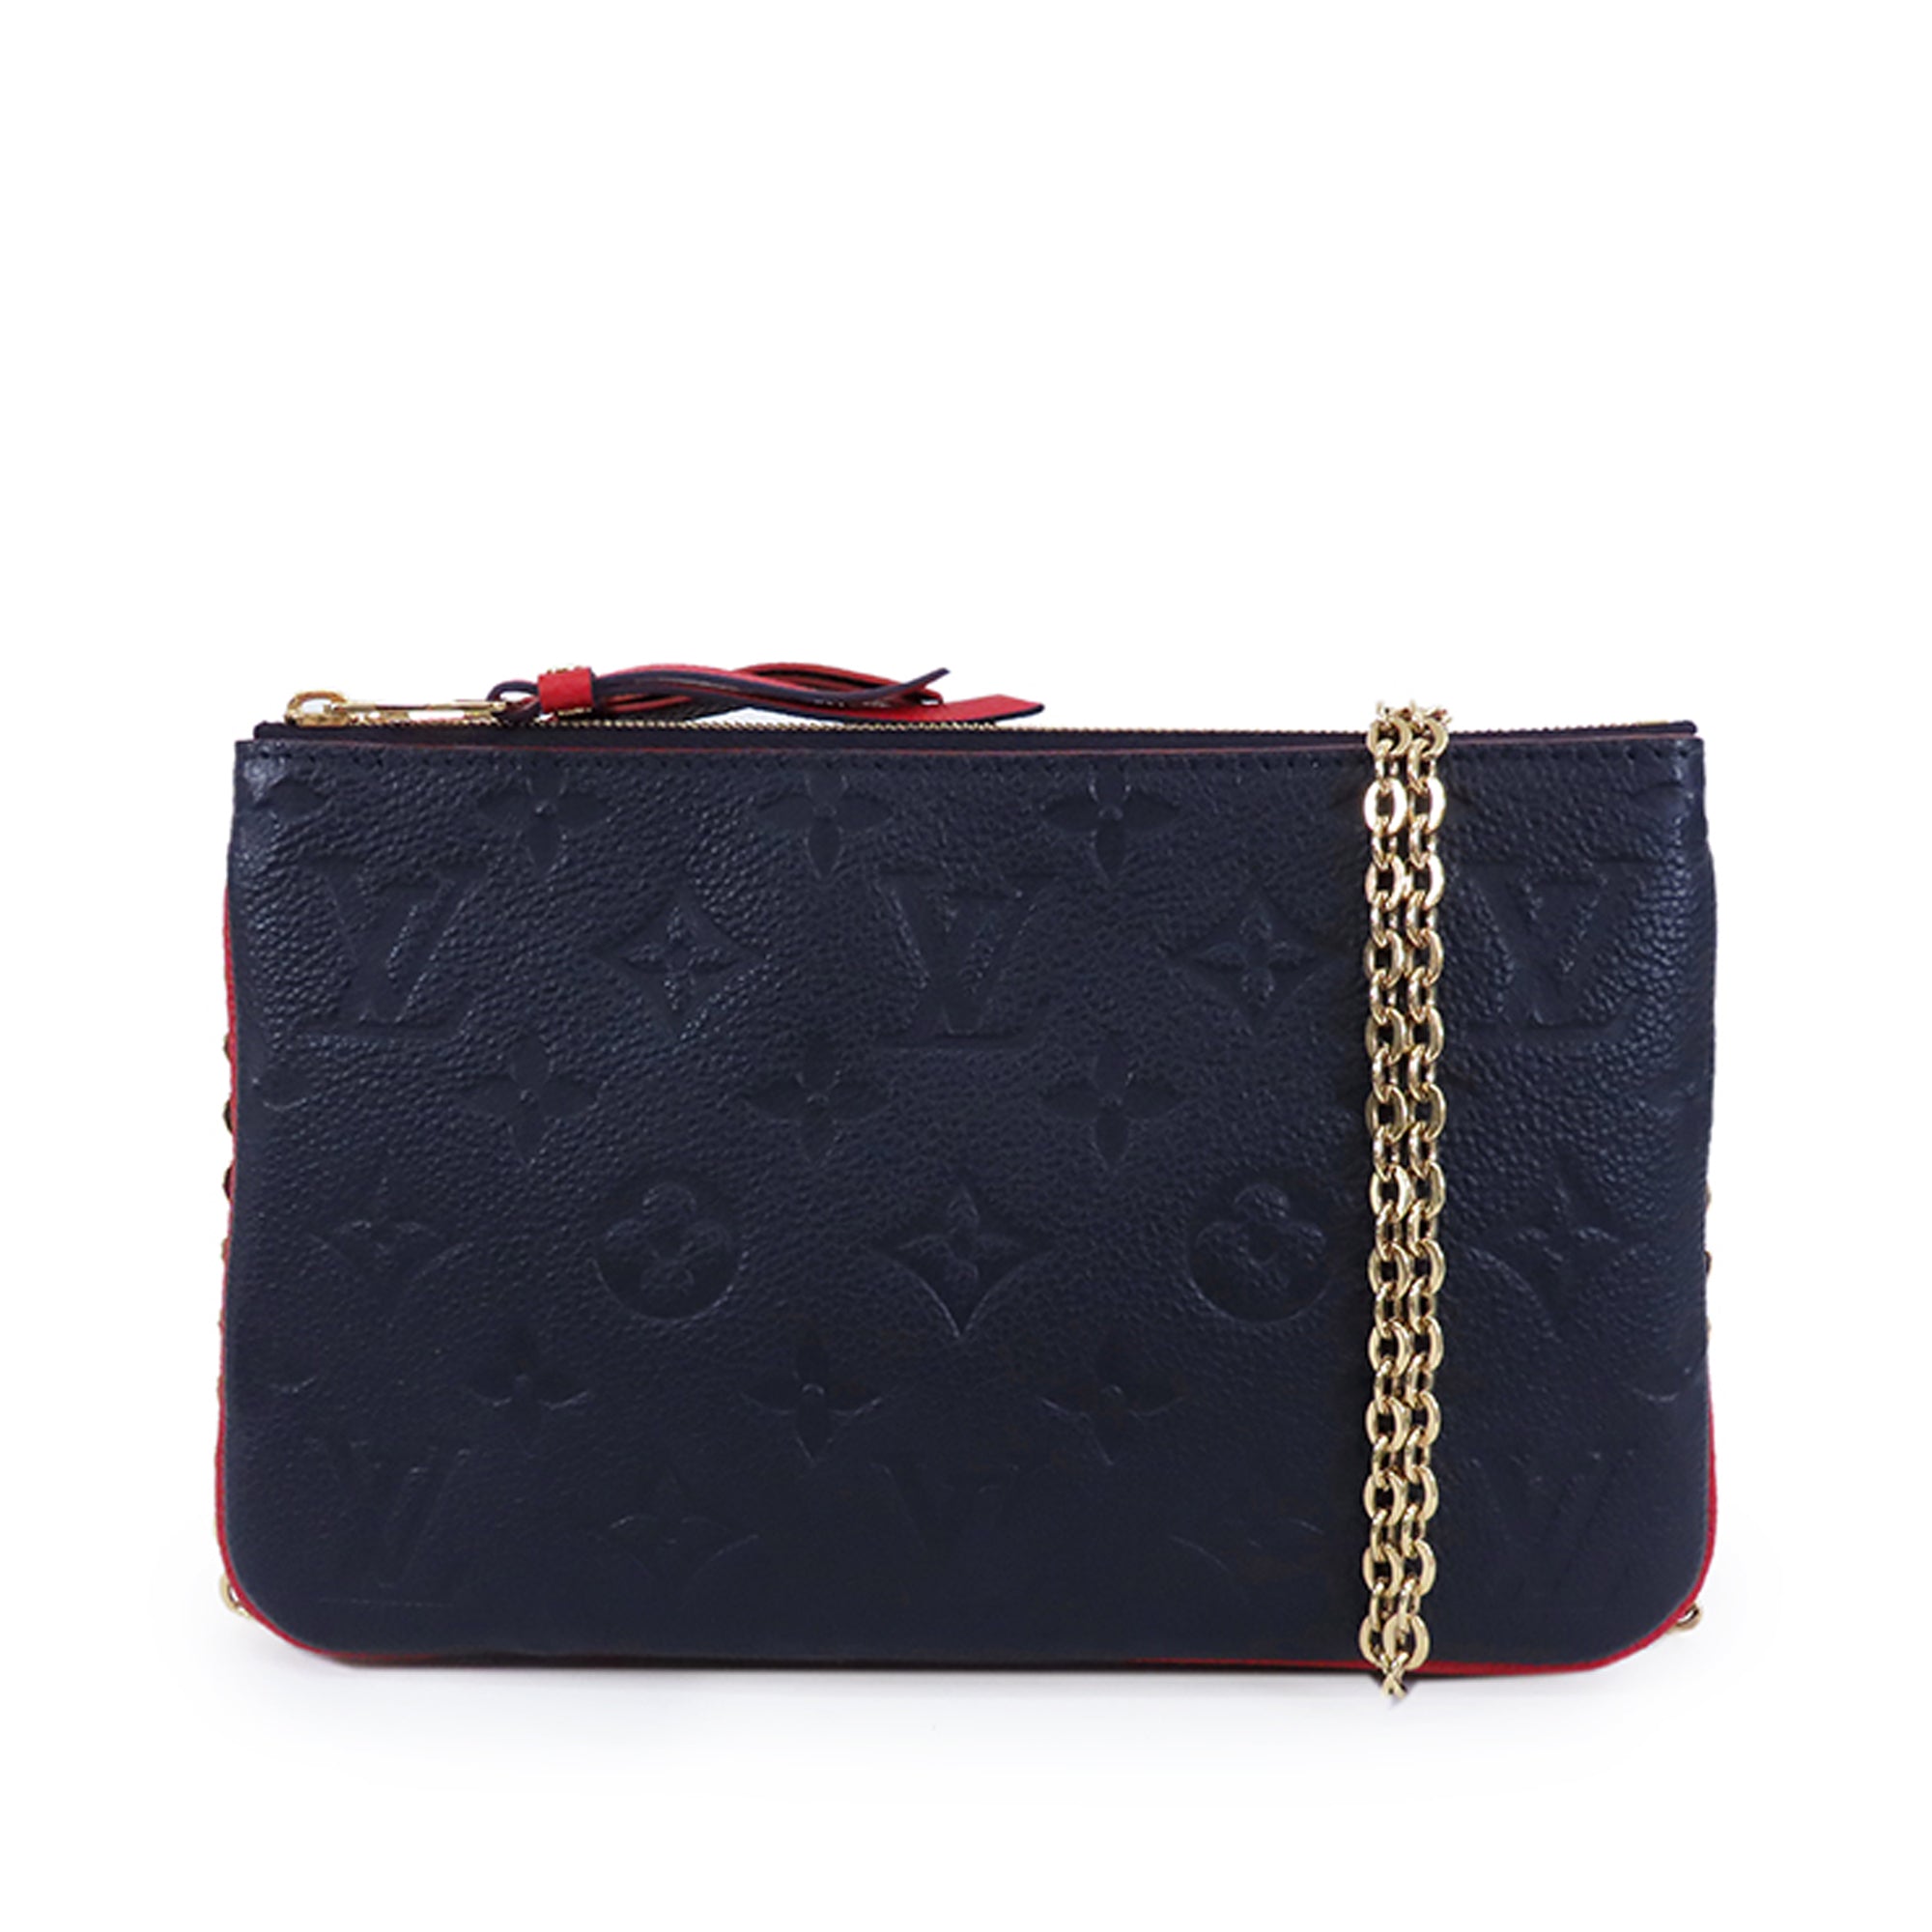 louis wallet purse crossbody